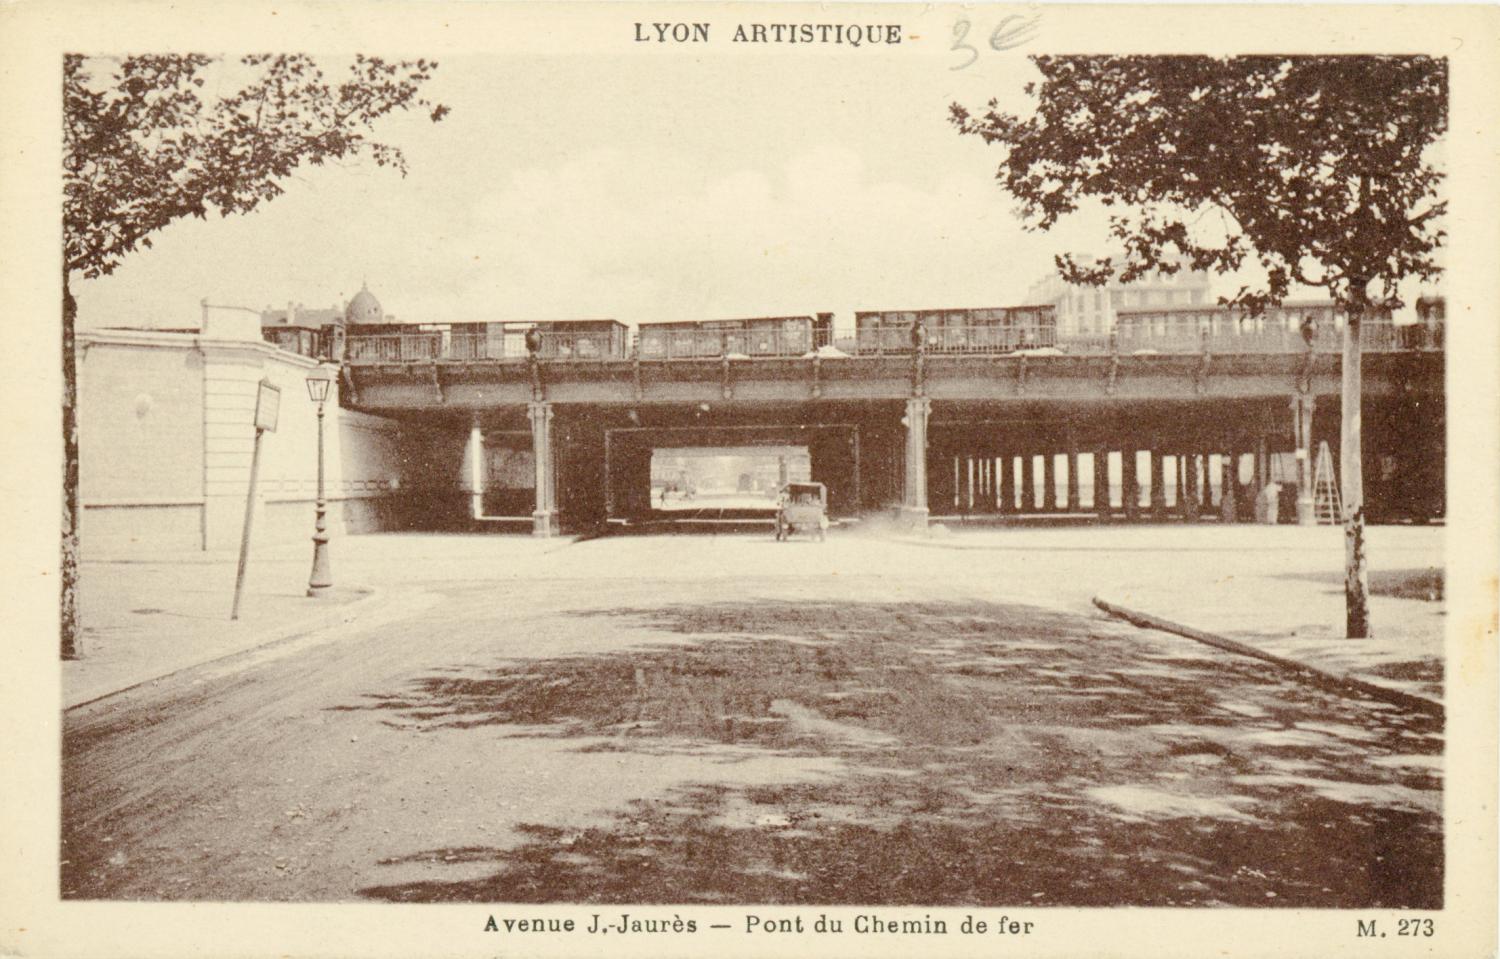 Lyon Artistique : Avenue J.-Jaurès ; Pont du chemin de fer.